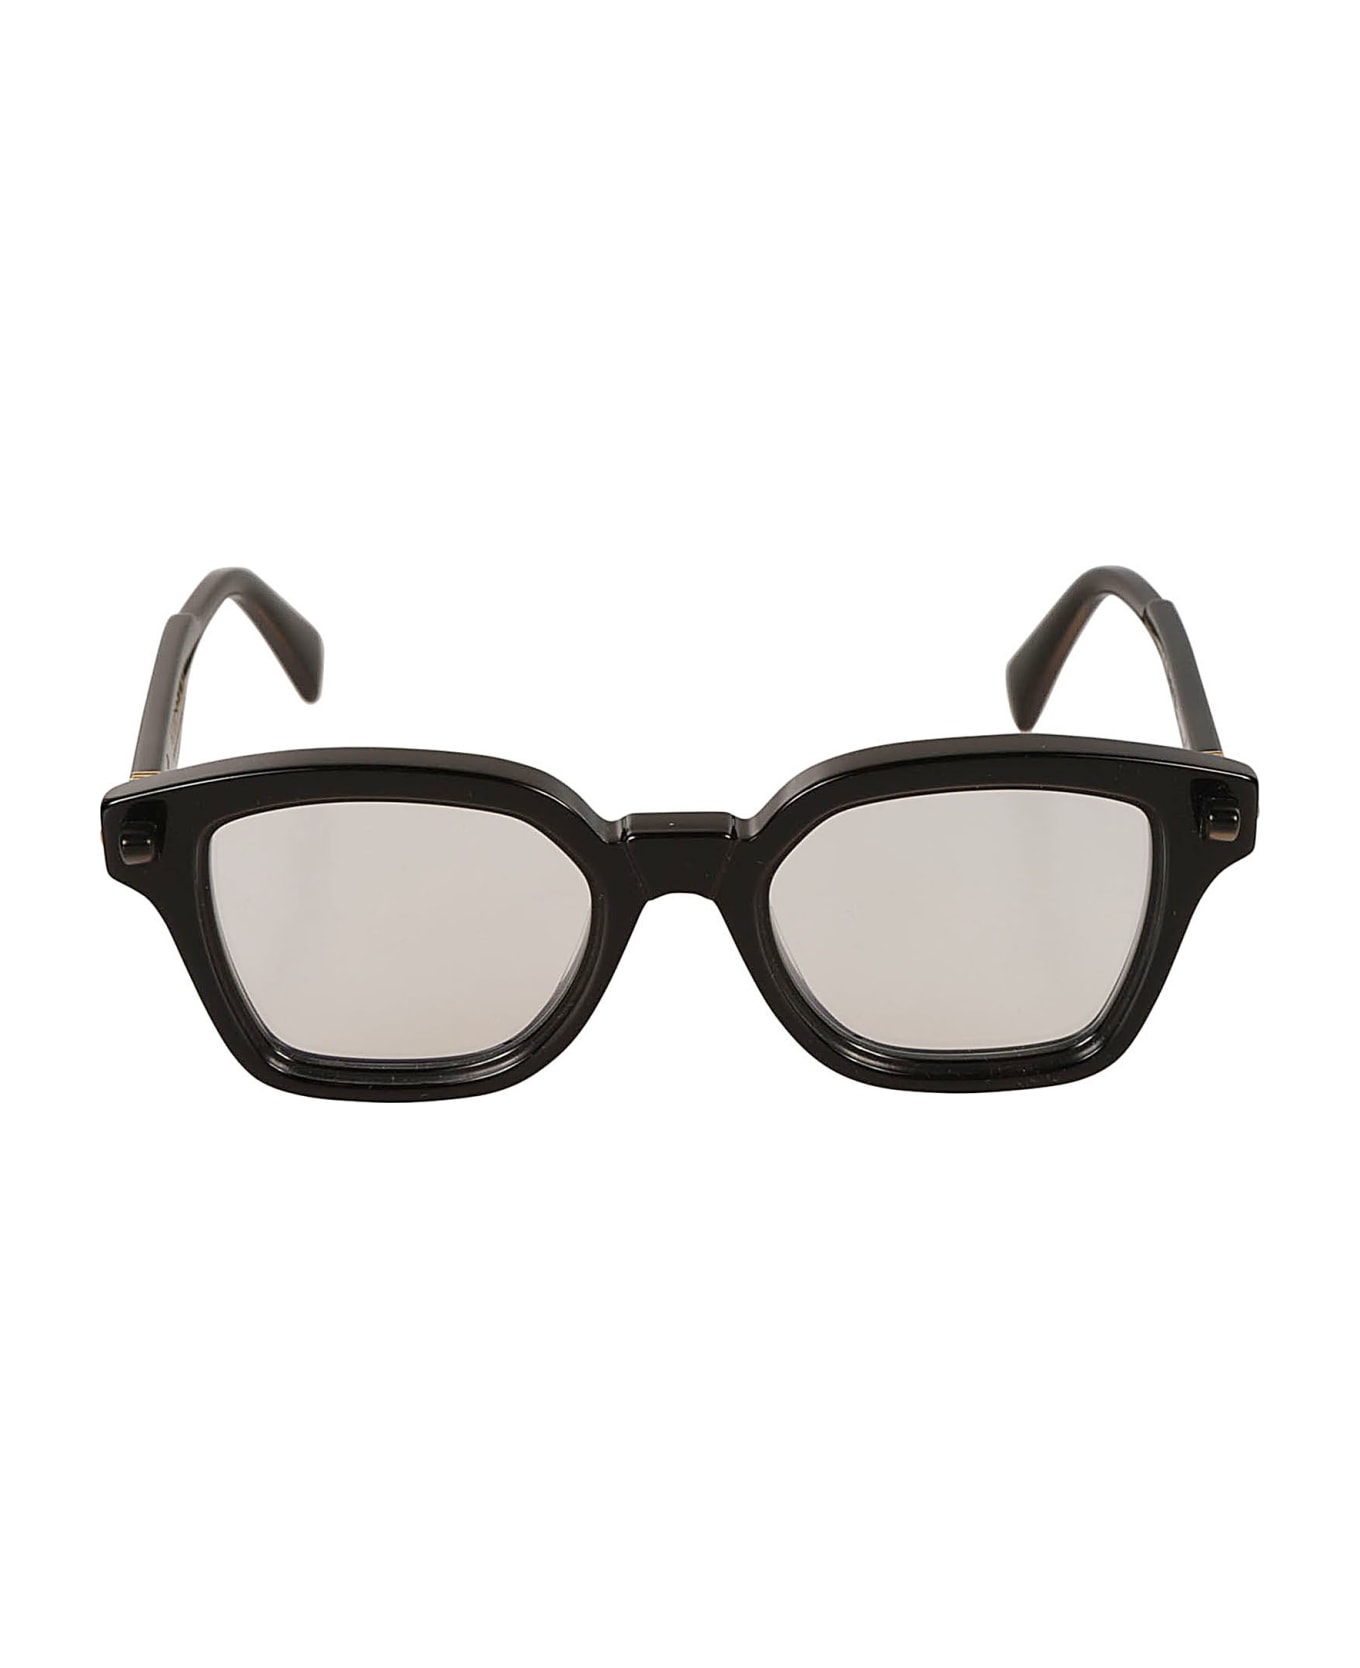 Kuboraum Q3 Glasses Glasses - black